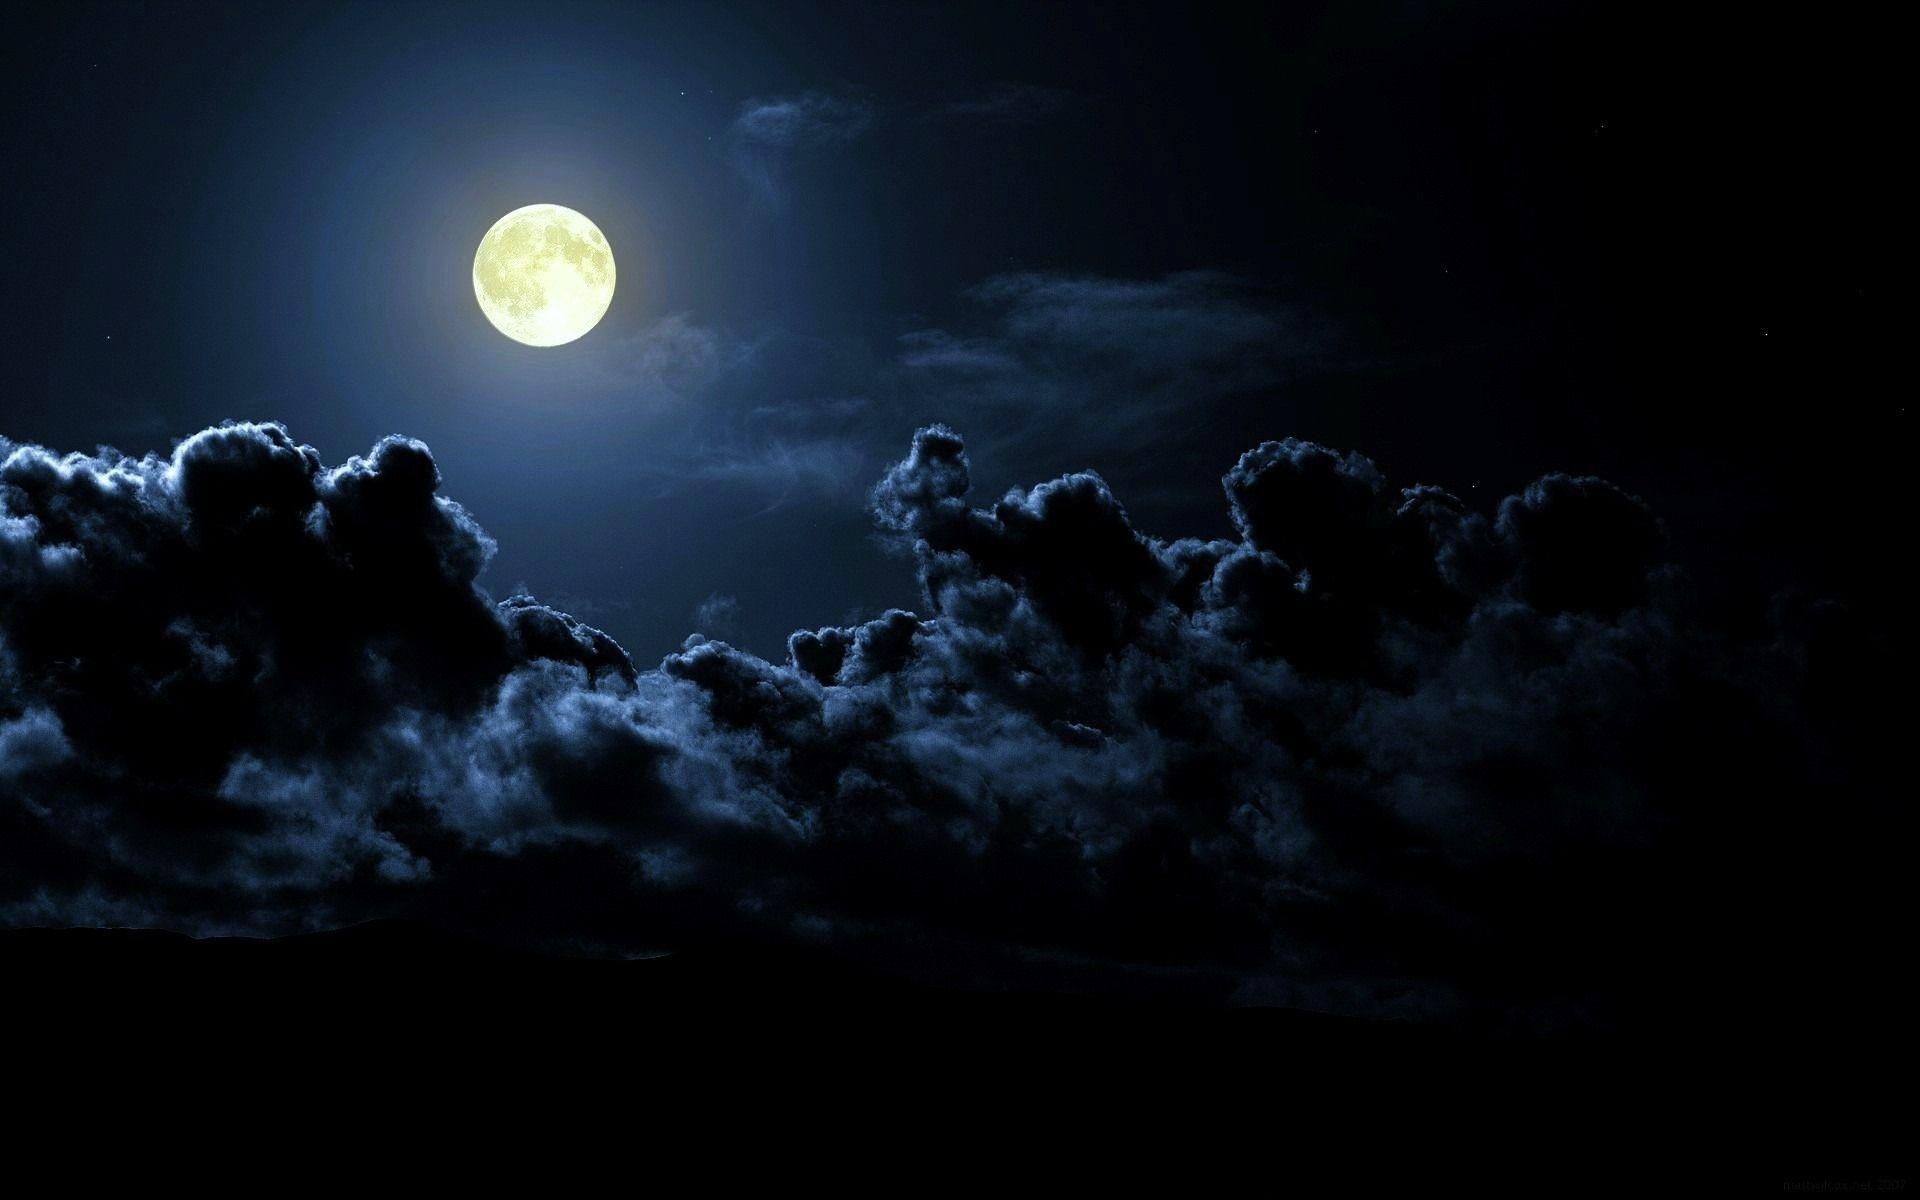 Berserker in the Moonlight by Fazal-sama on DeviantArt